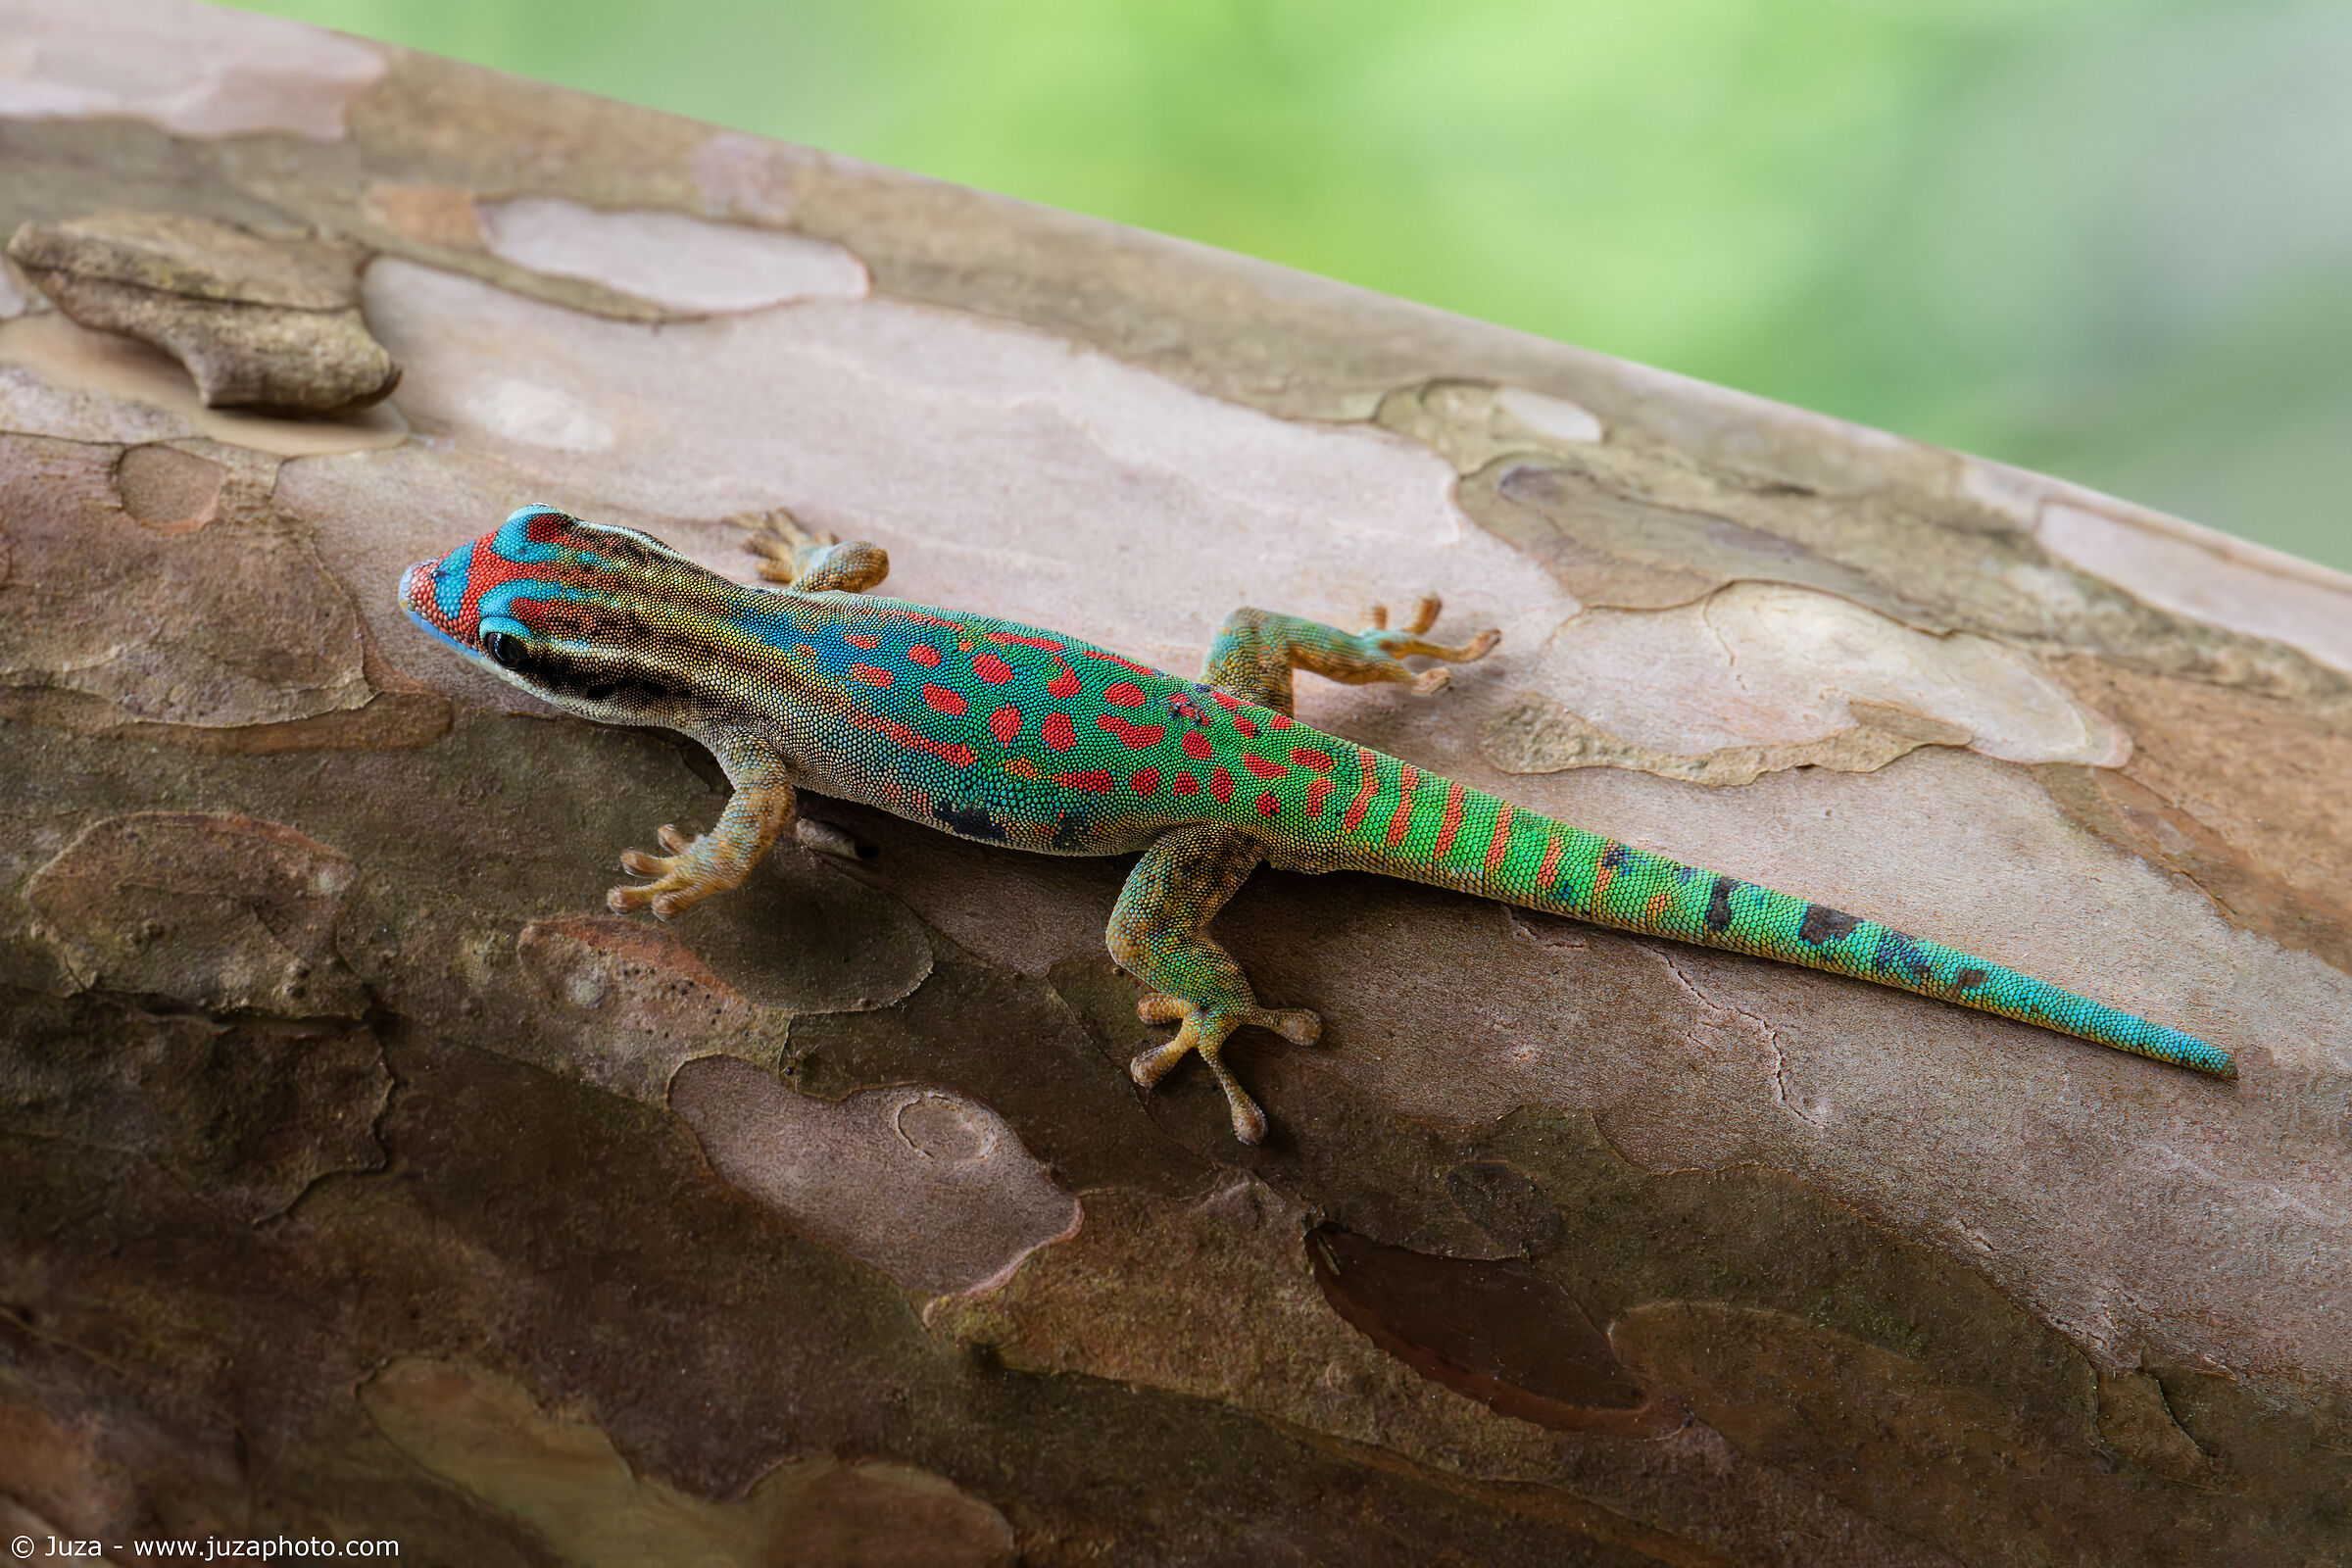 Il meraviglioso Ornate Day Gecko (Phelsuma ornata)...